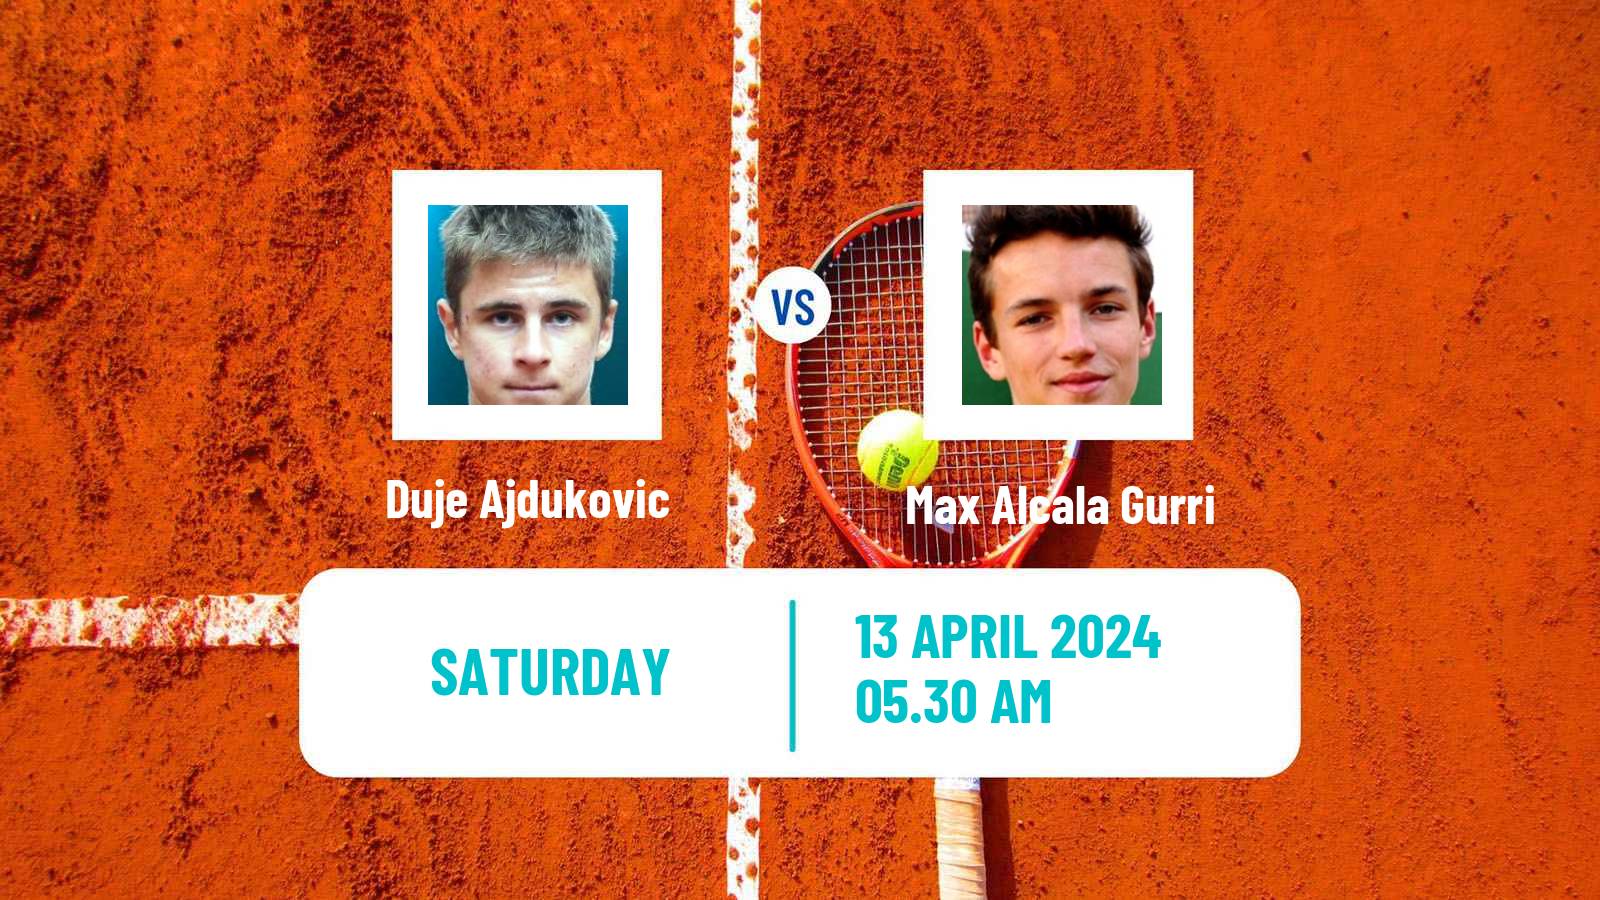 Tennis ATP Barcelona Duje Ajdukovic - Max Alcala Gurri